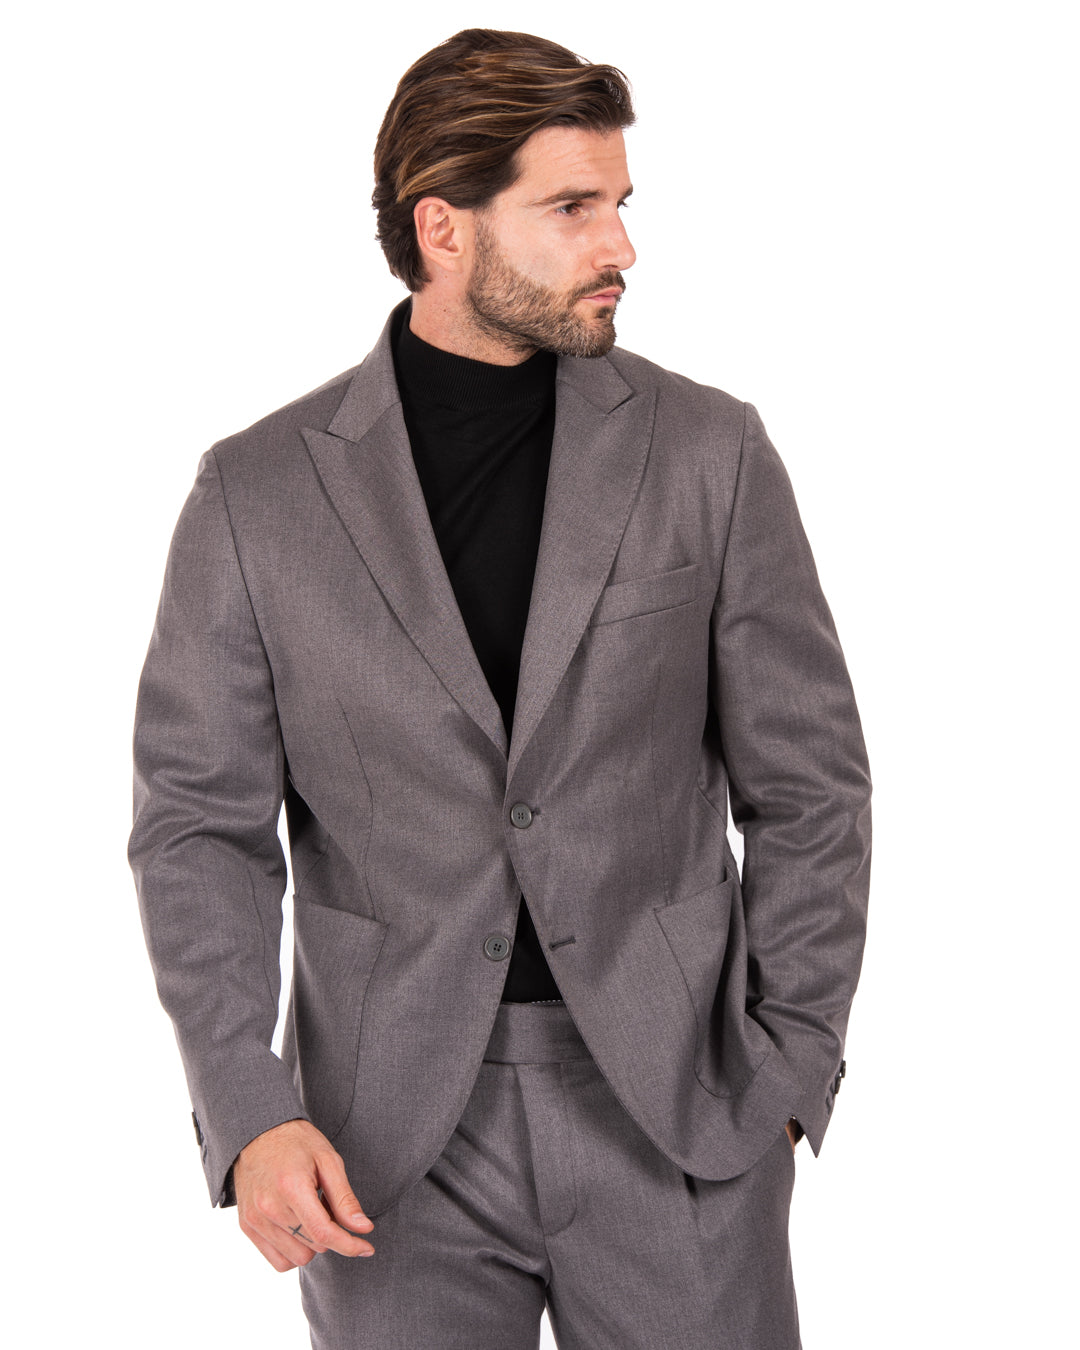 Bond - veste grise double couture